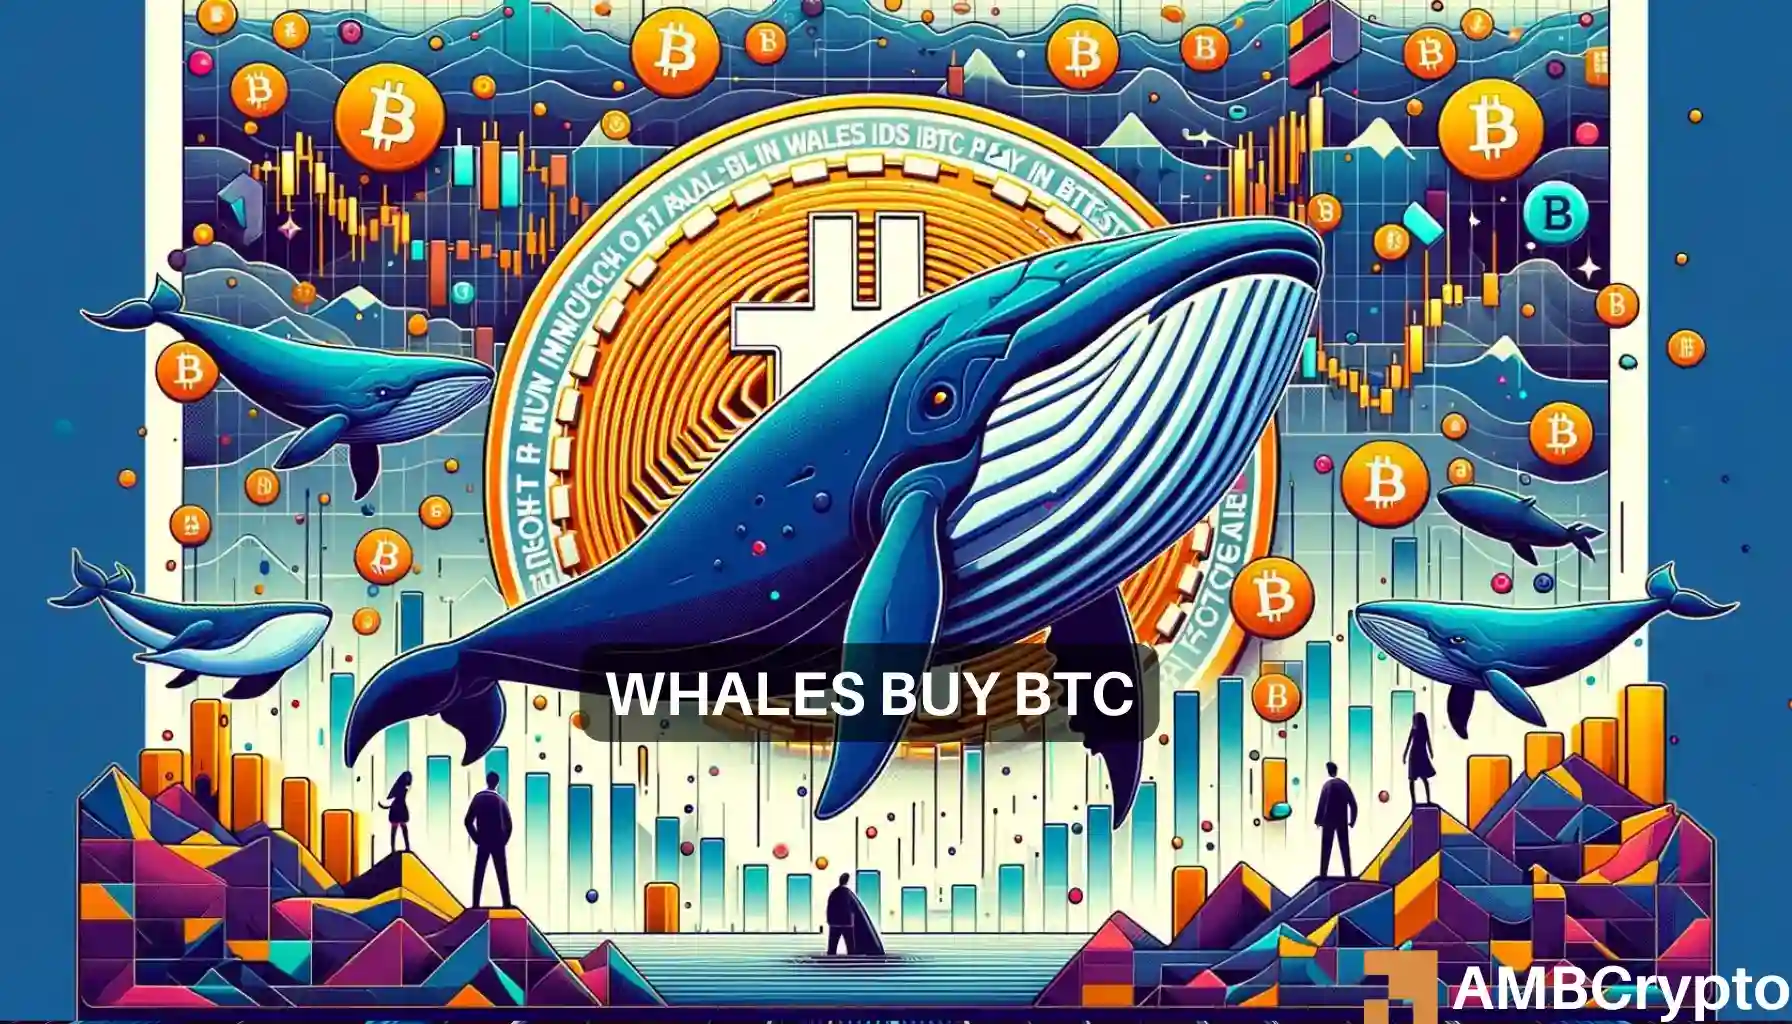 BTC whales buy